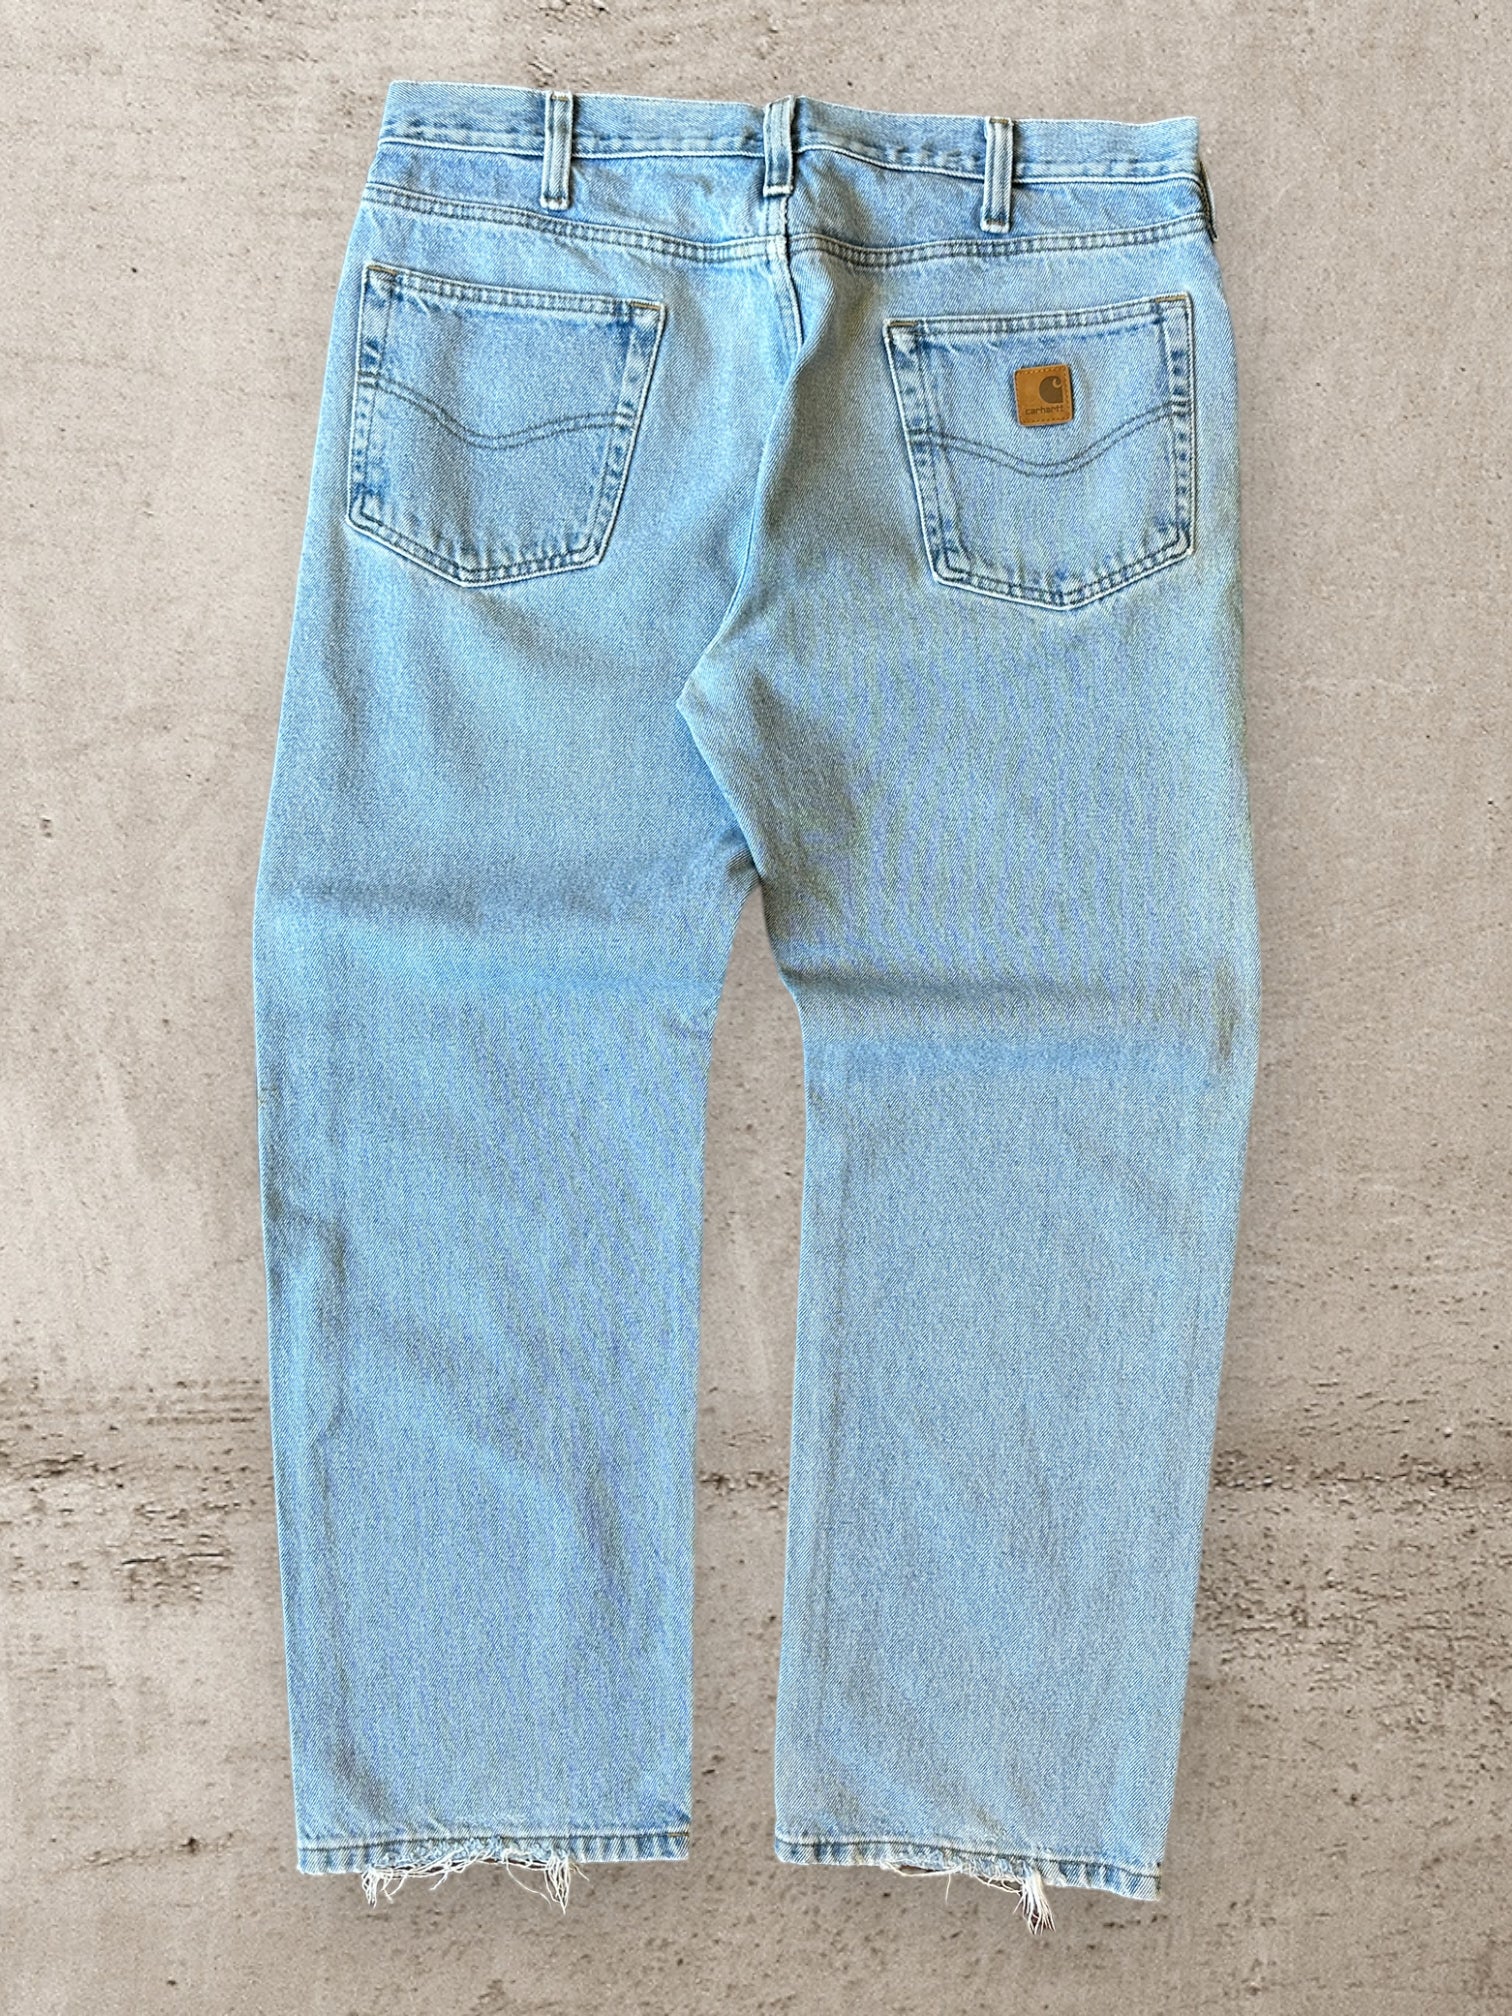 00s Carhartt Light Wash Denim Jeans - 36x29